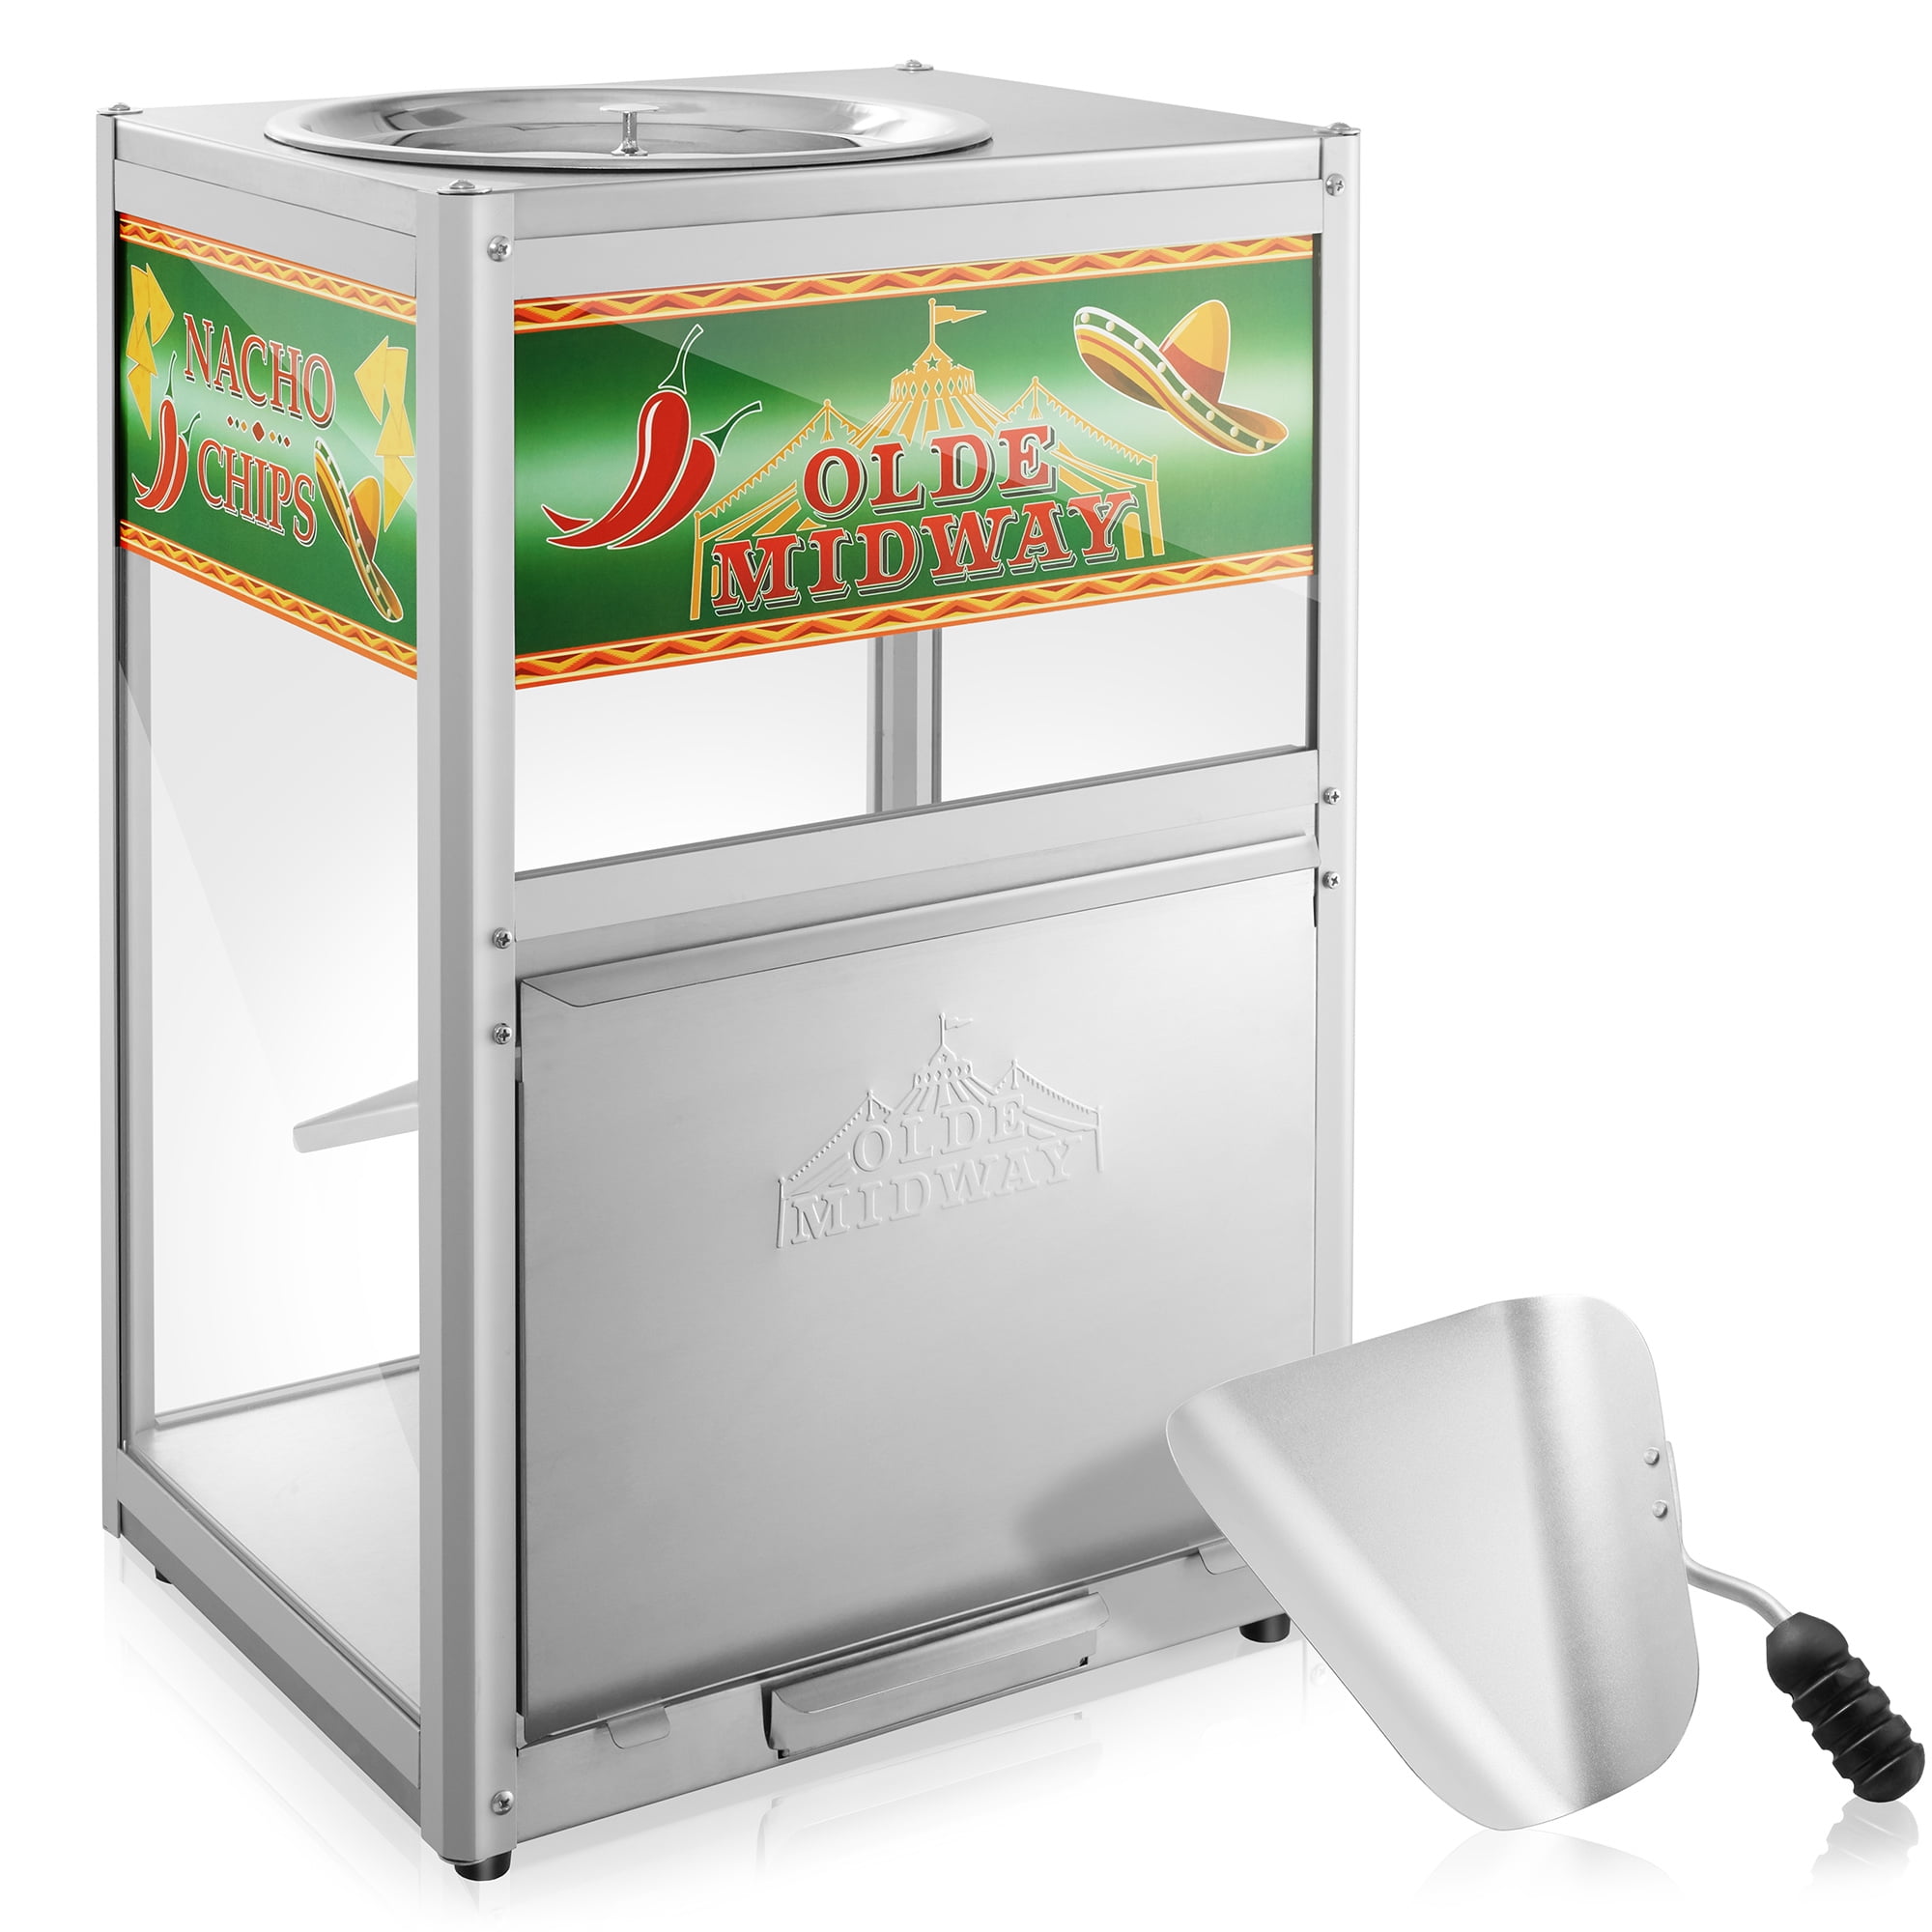 Ninja® CREAMi® Deluxe 11-in-1 Ice Cream and Frozen Treat Maker